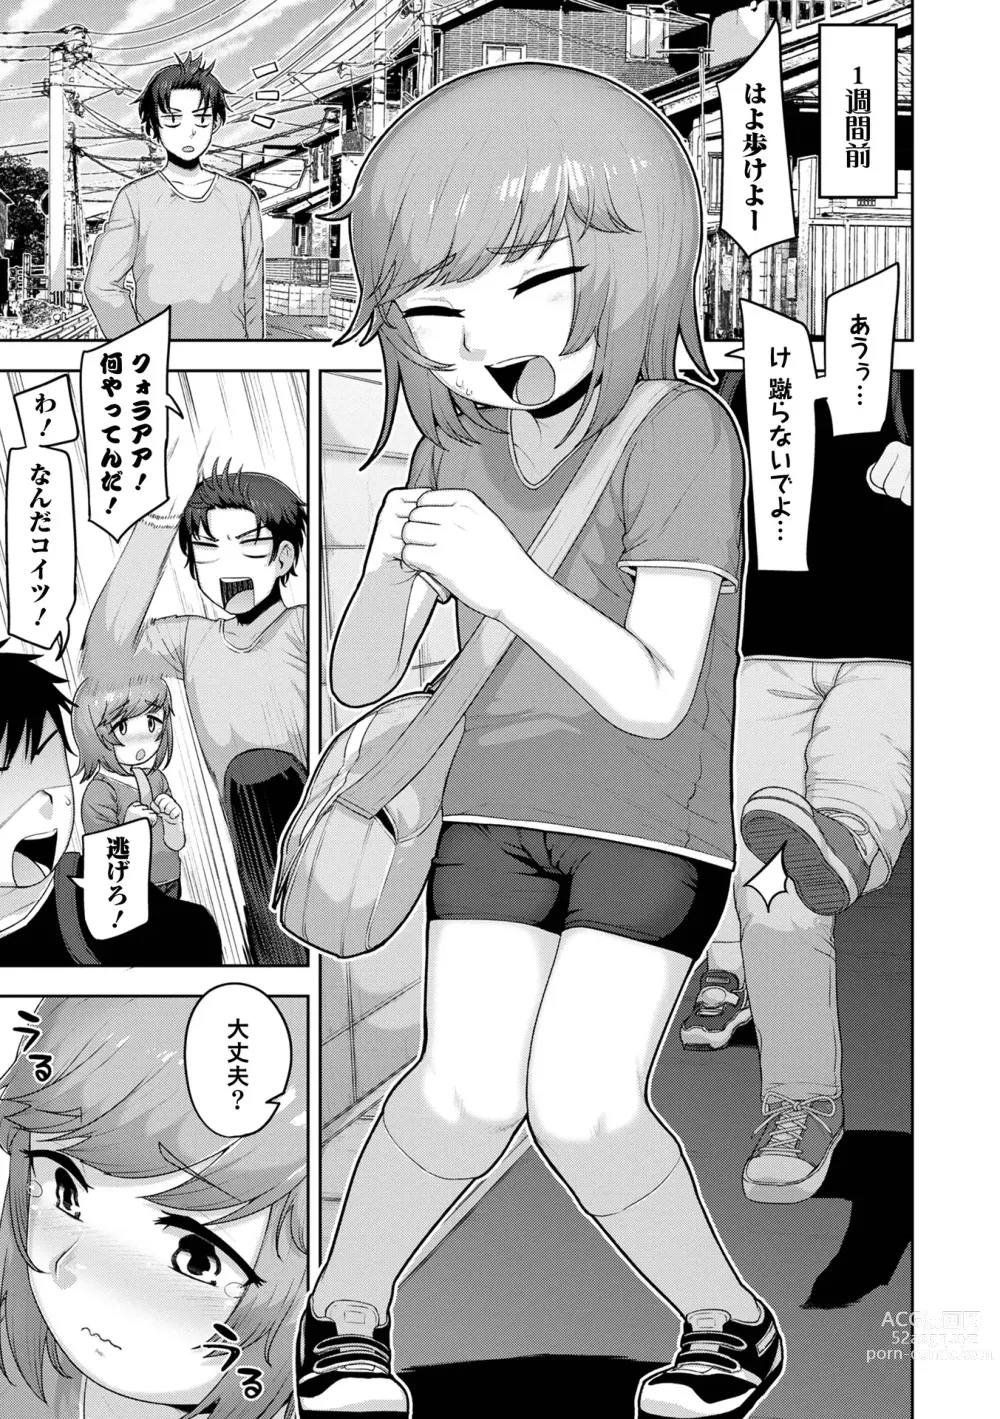 Page 7 of manga Muchiniku Otokonoko Tenshi’s